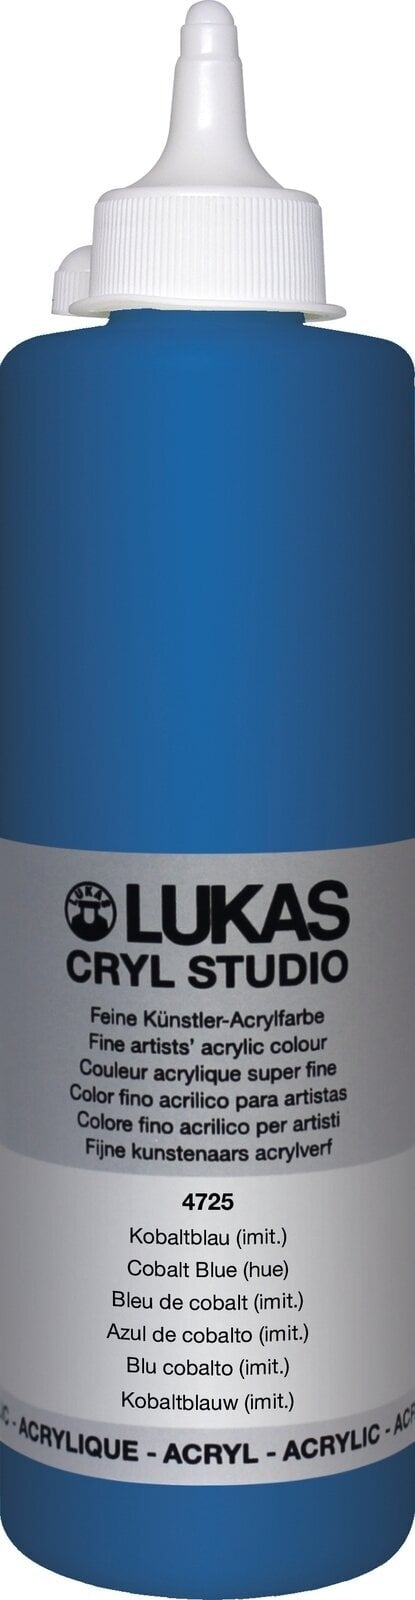 Акрилна боя Lukas Cryl Studio АКРИЛНА боя 500 ml Cobalt Blue Hue